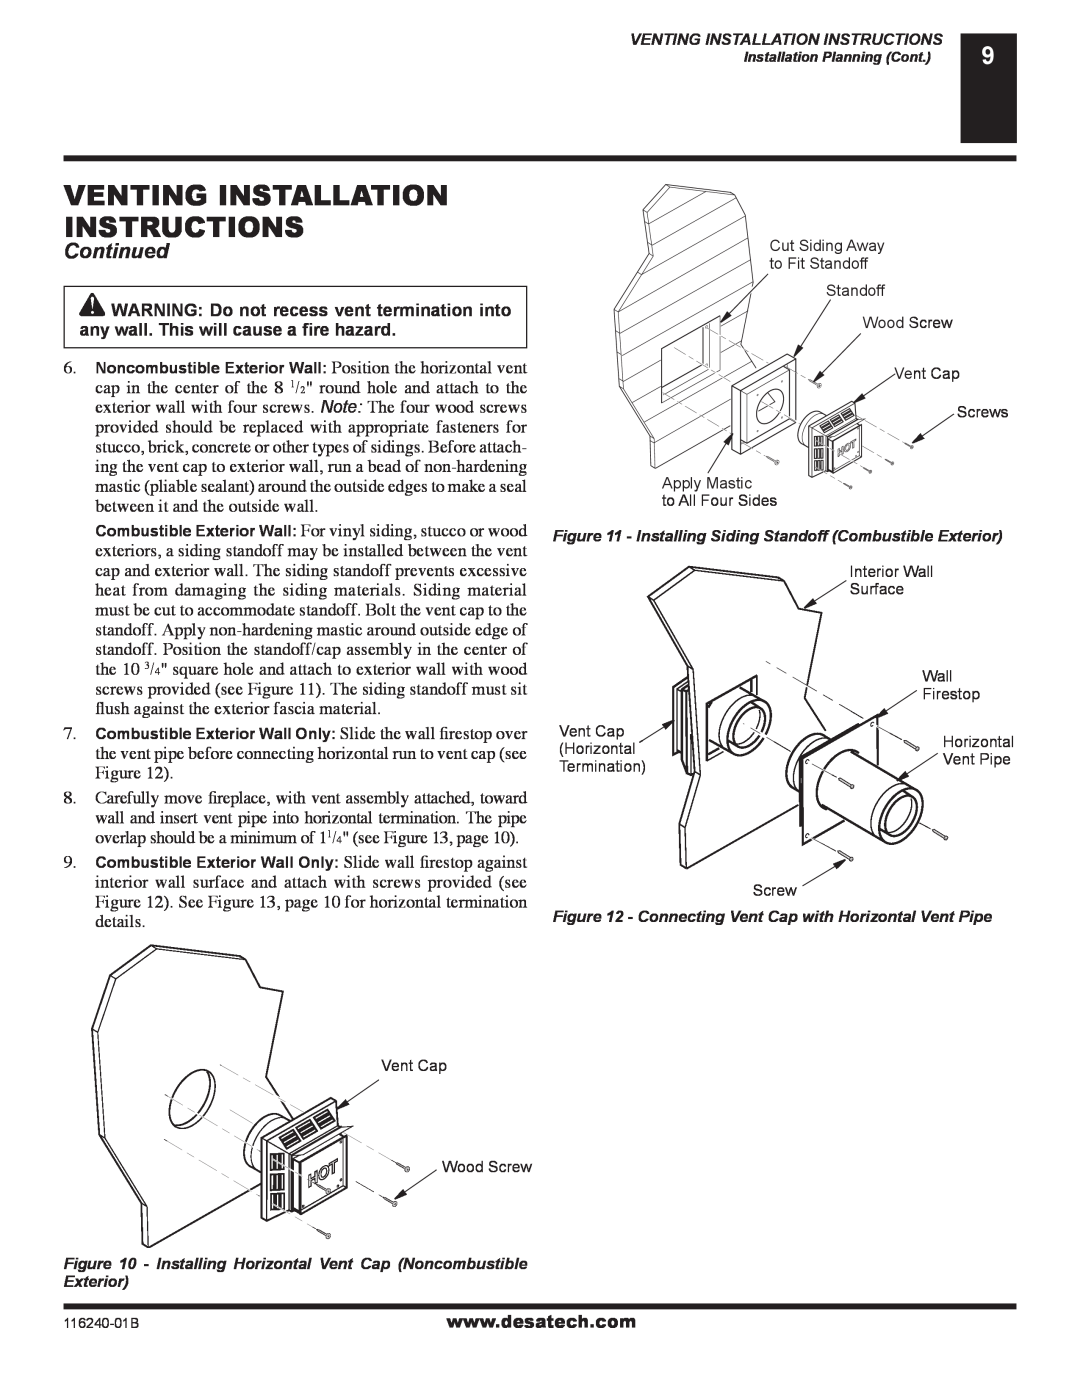 Desa (V)KC42NE SERIE installation manual Venting Installation Instructions, Continued 